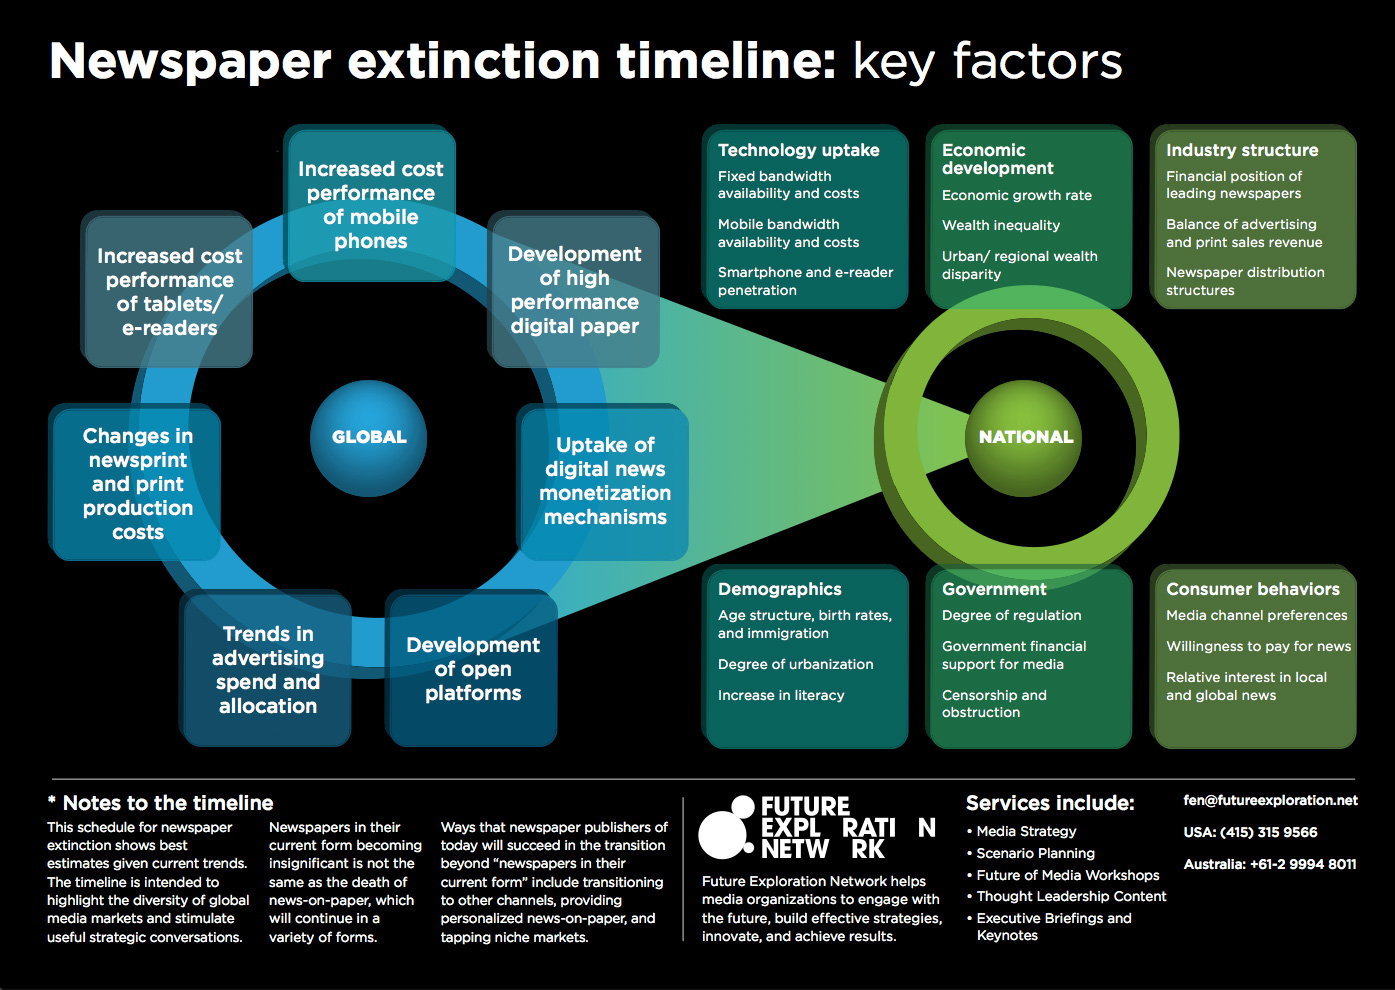 Newspaper extinction timeline factors